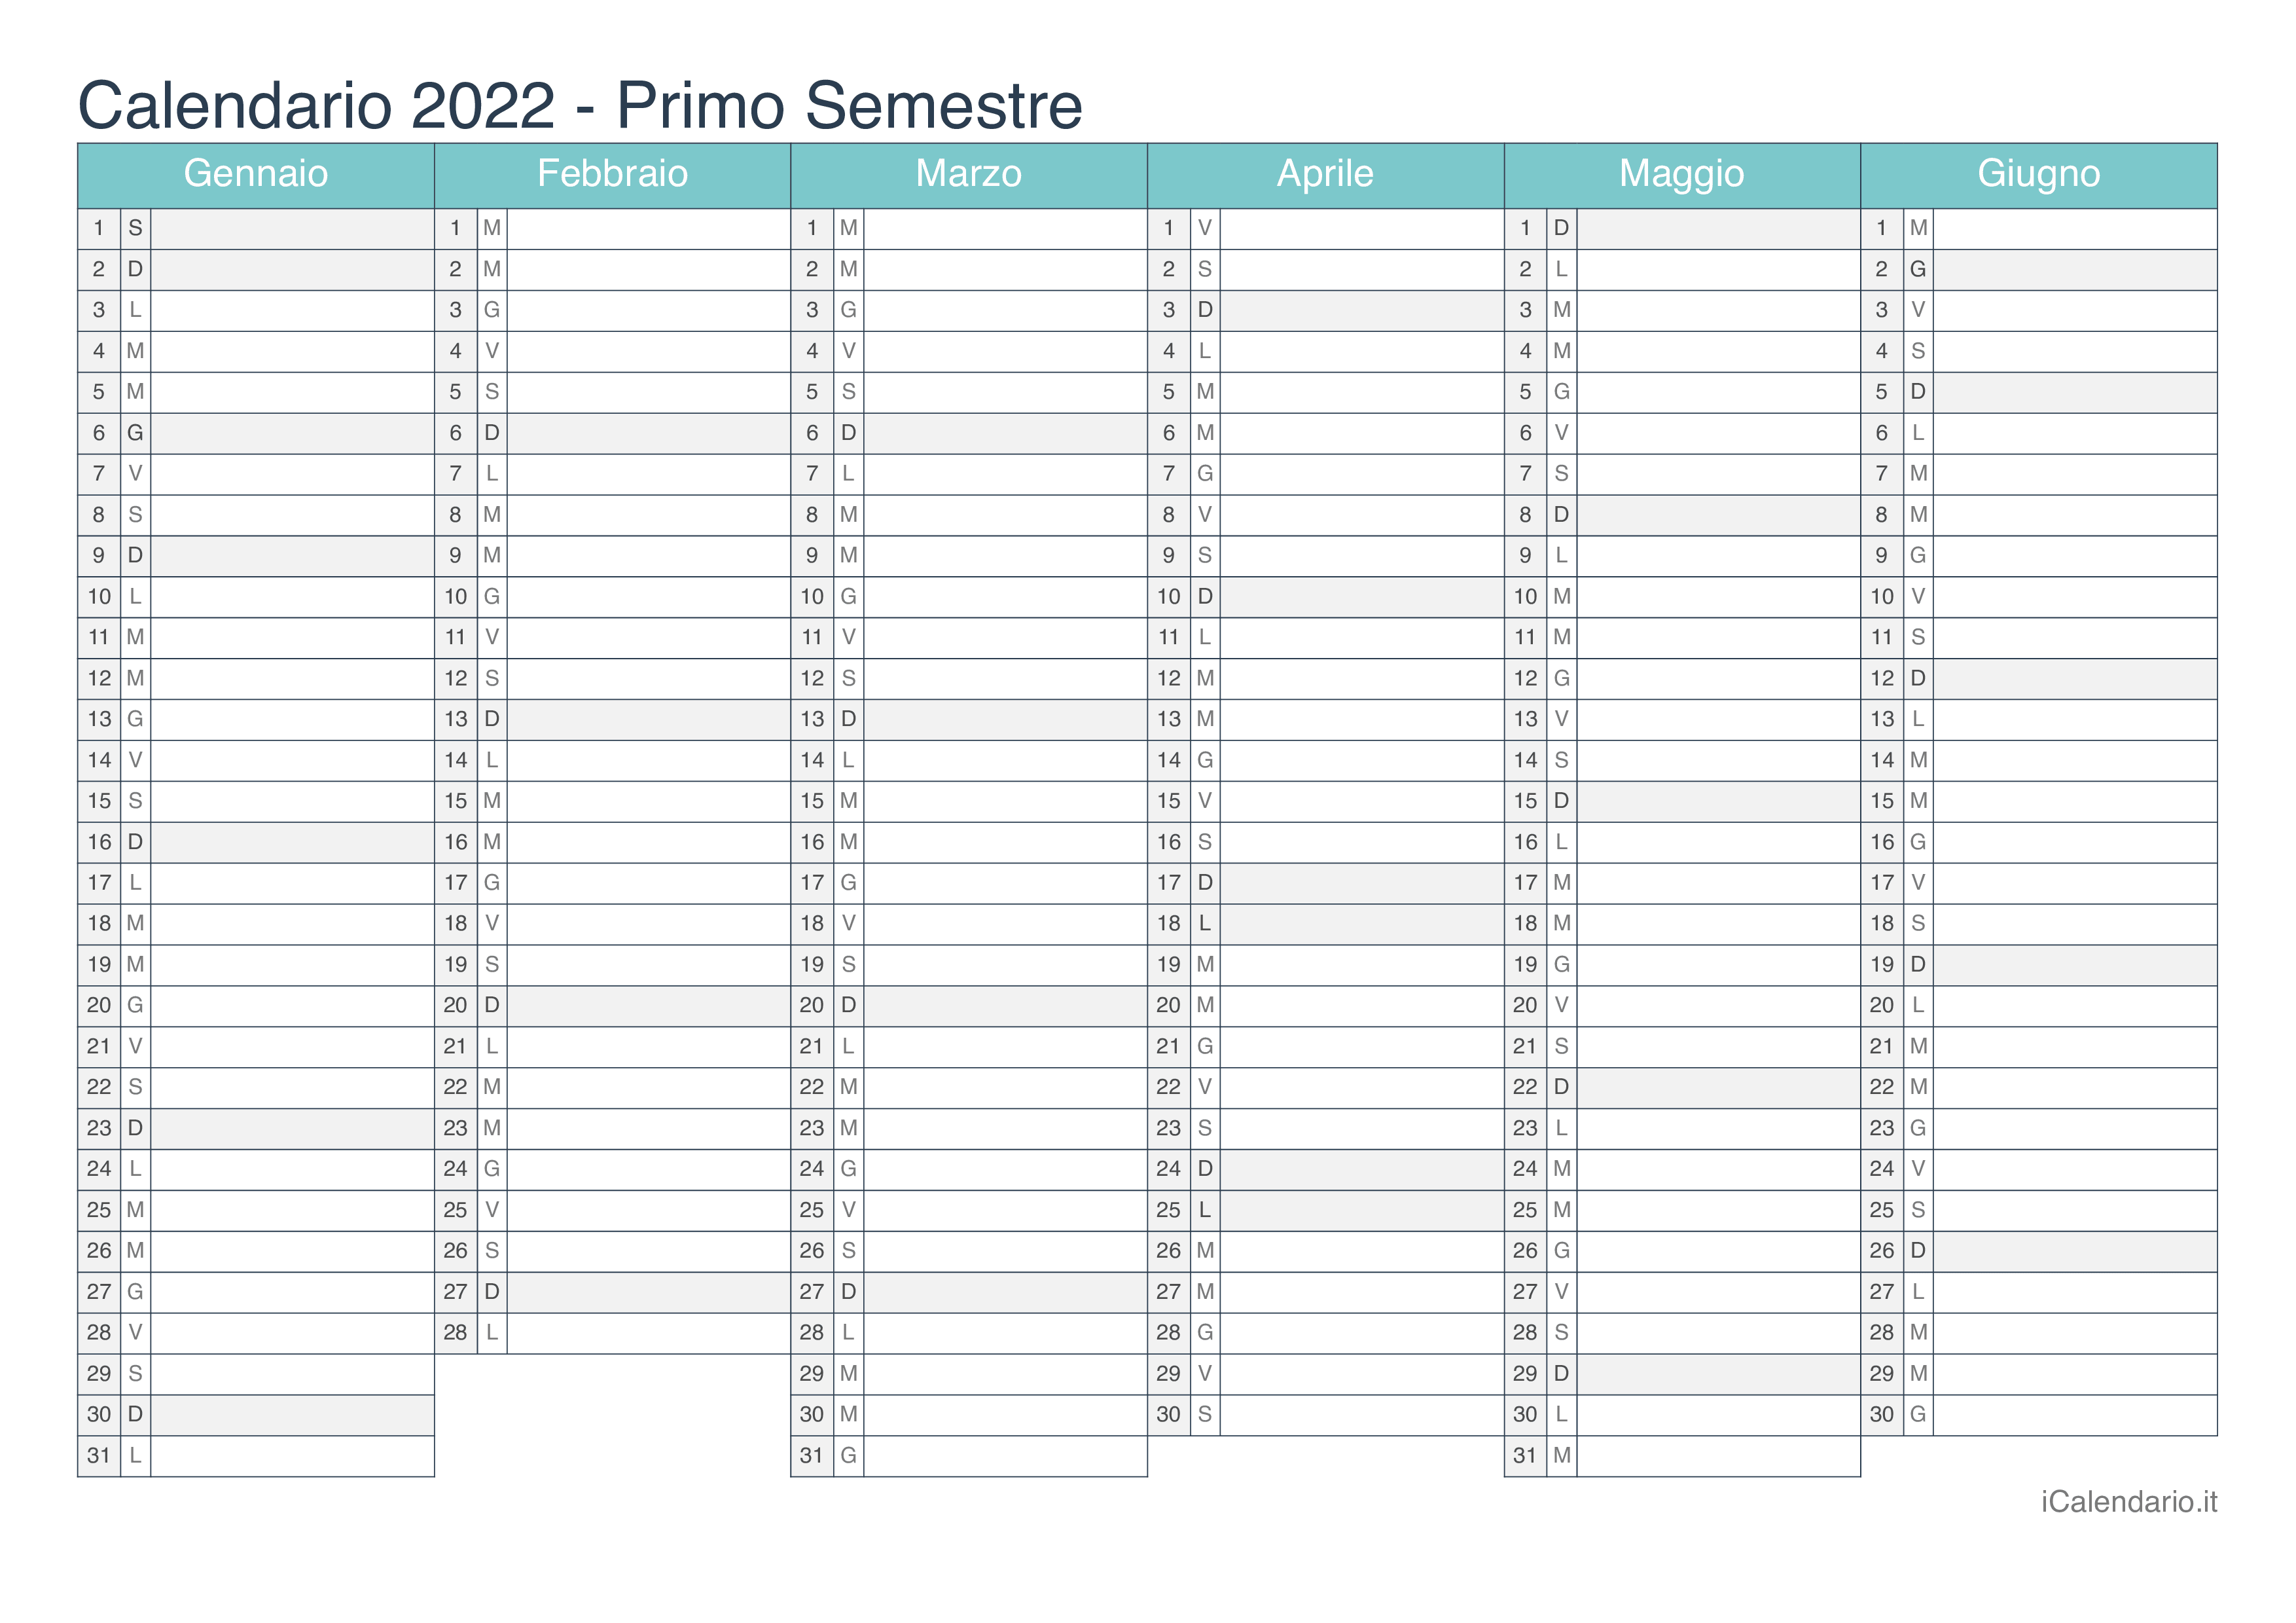 Calendario semestrale 2022 - Turchese